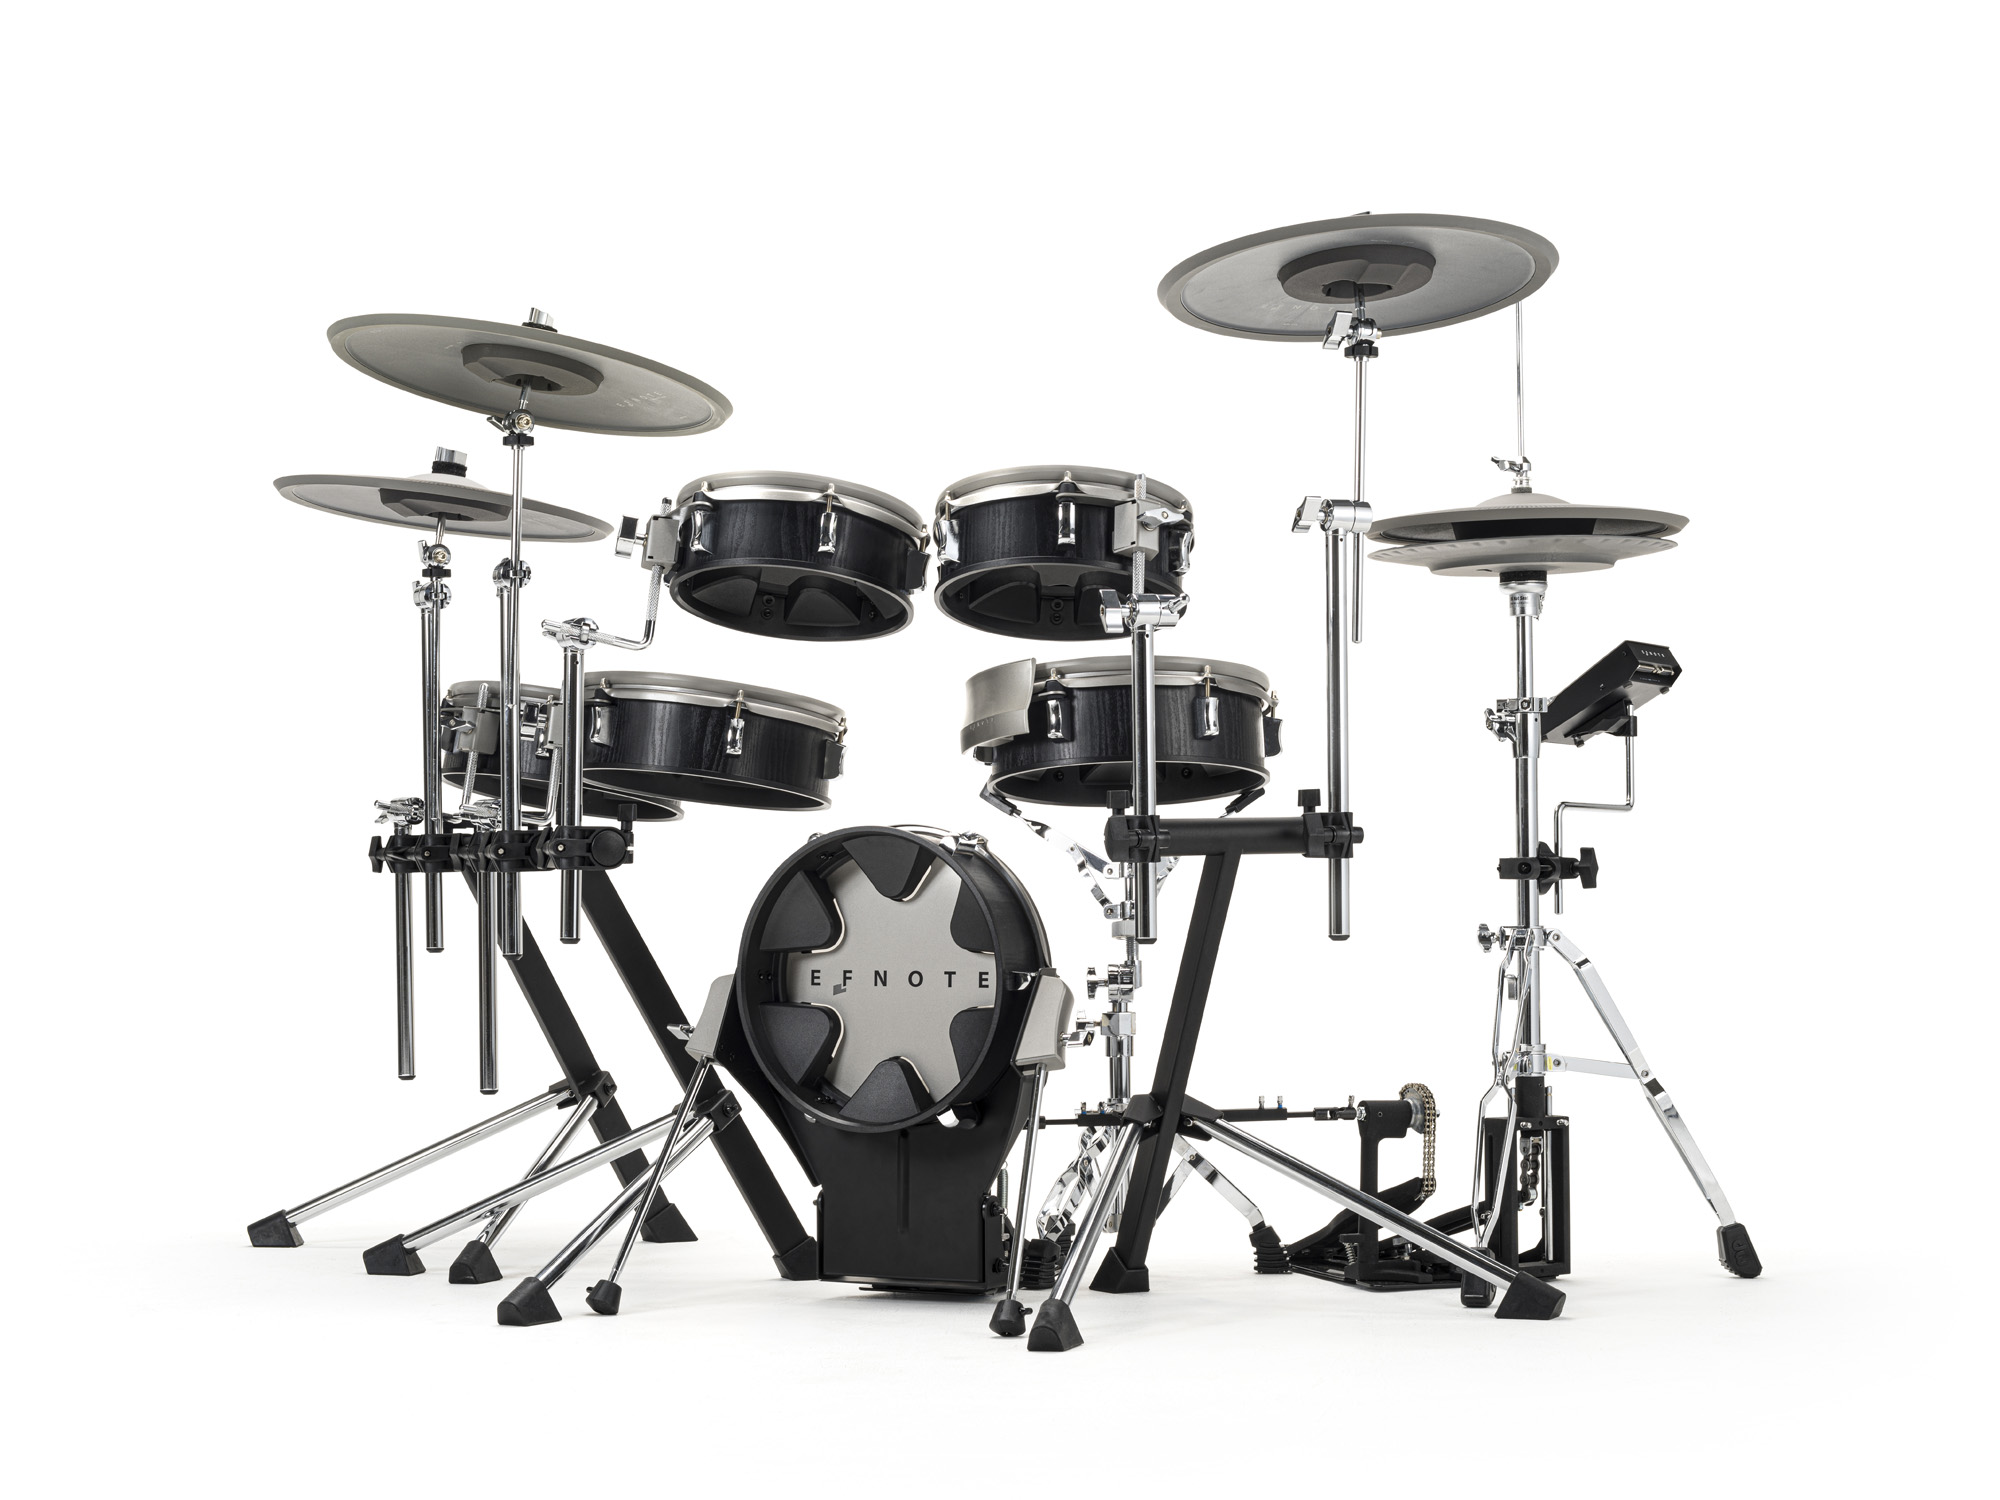 Efnote Efd3x Drum Kit - Batería electrónica completa - Variation 1